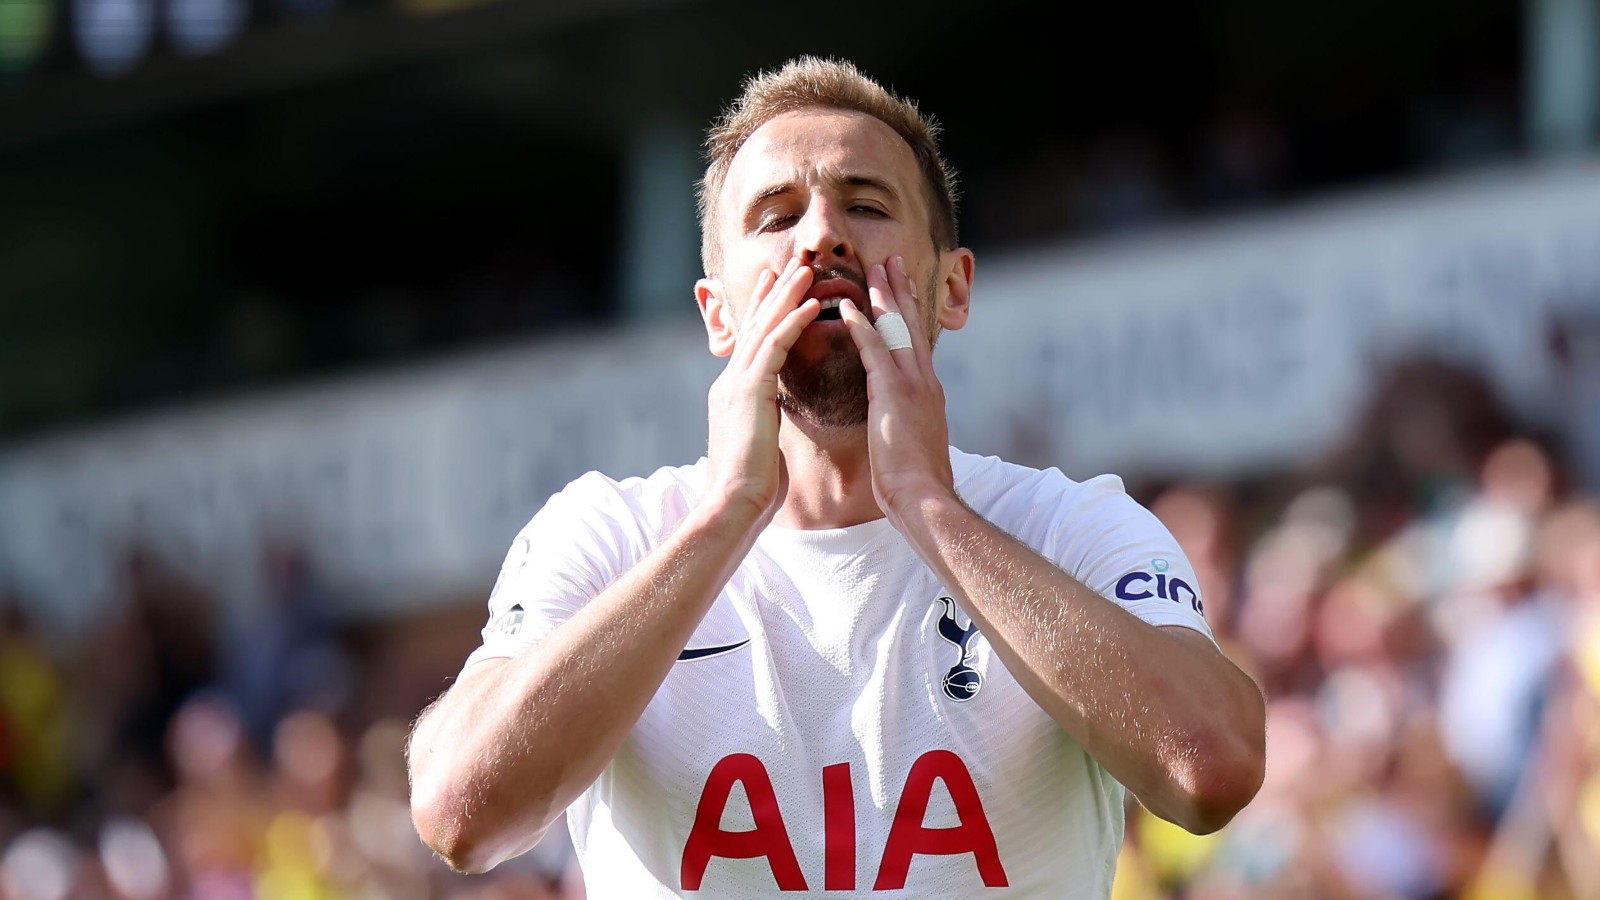 Kane lascia il trofeo del Tottenham fuori dalla “carriera ideale” mentre l’attaccante dell’Inghilterra finalmente “si sente libero” di nuovo